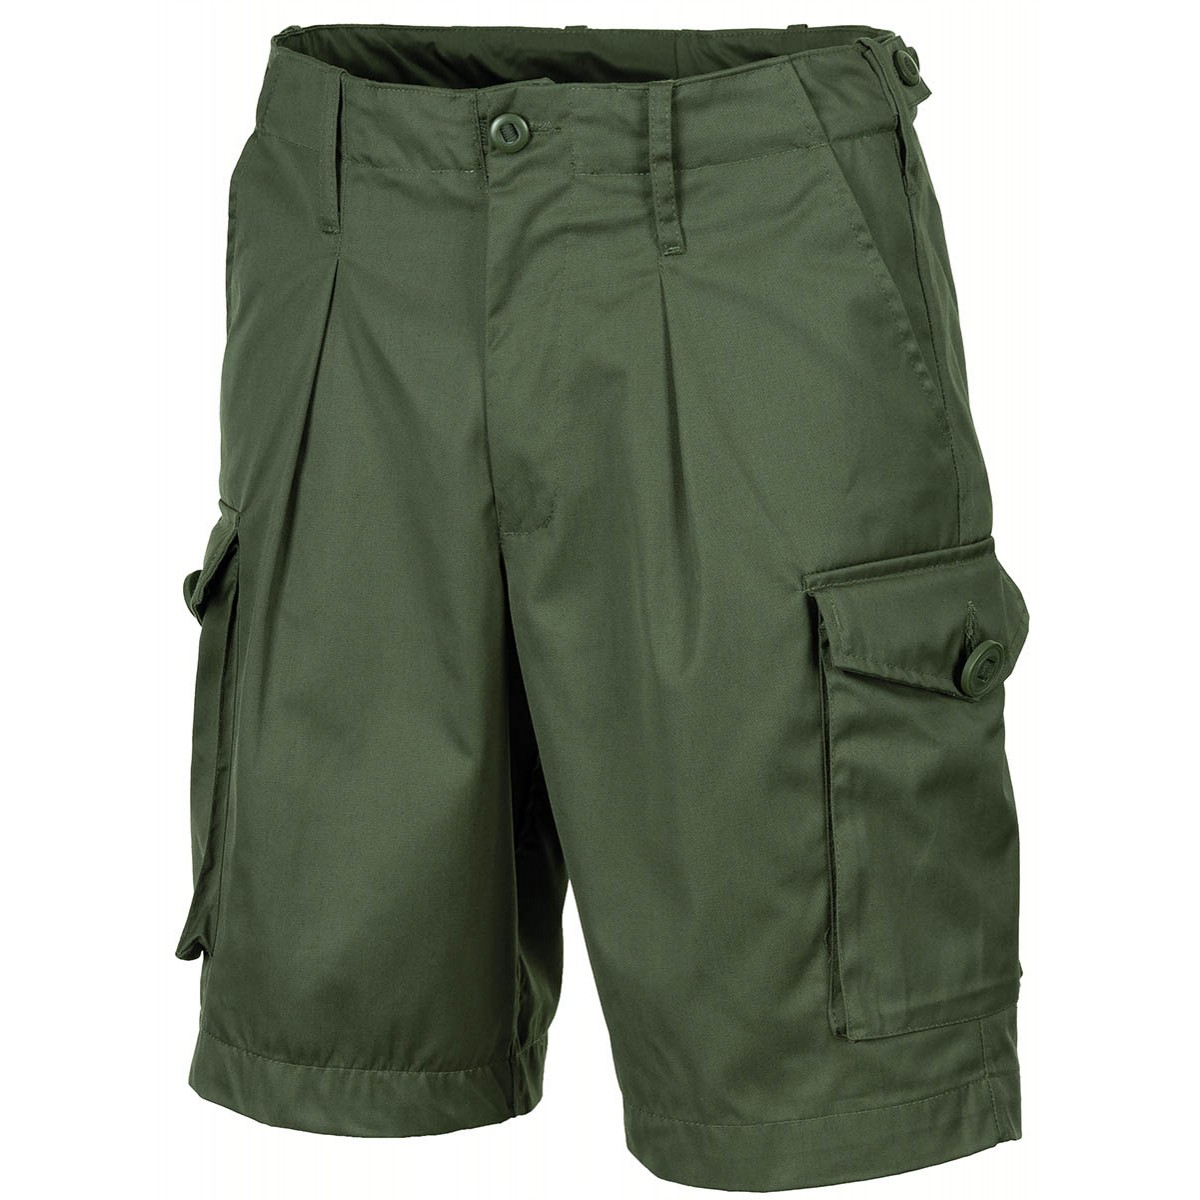 Krátké kalhoty MFH Combat Bermuda - olivové, XL